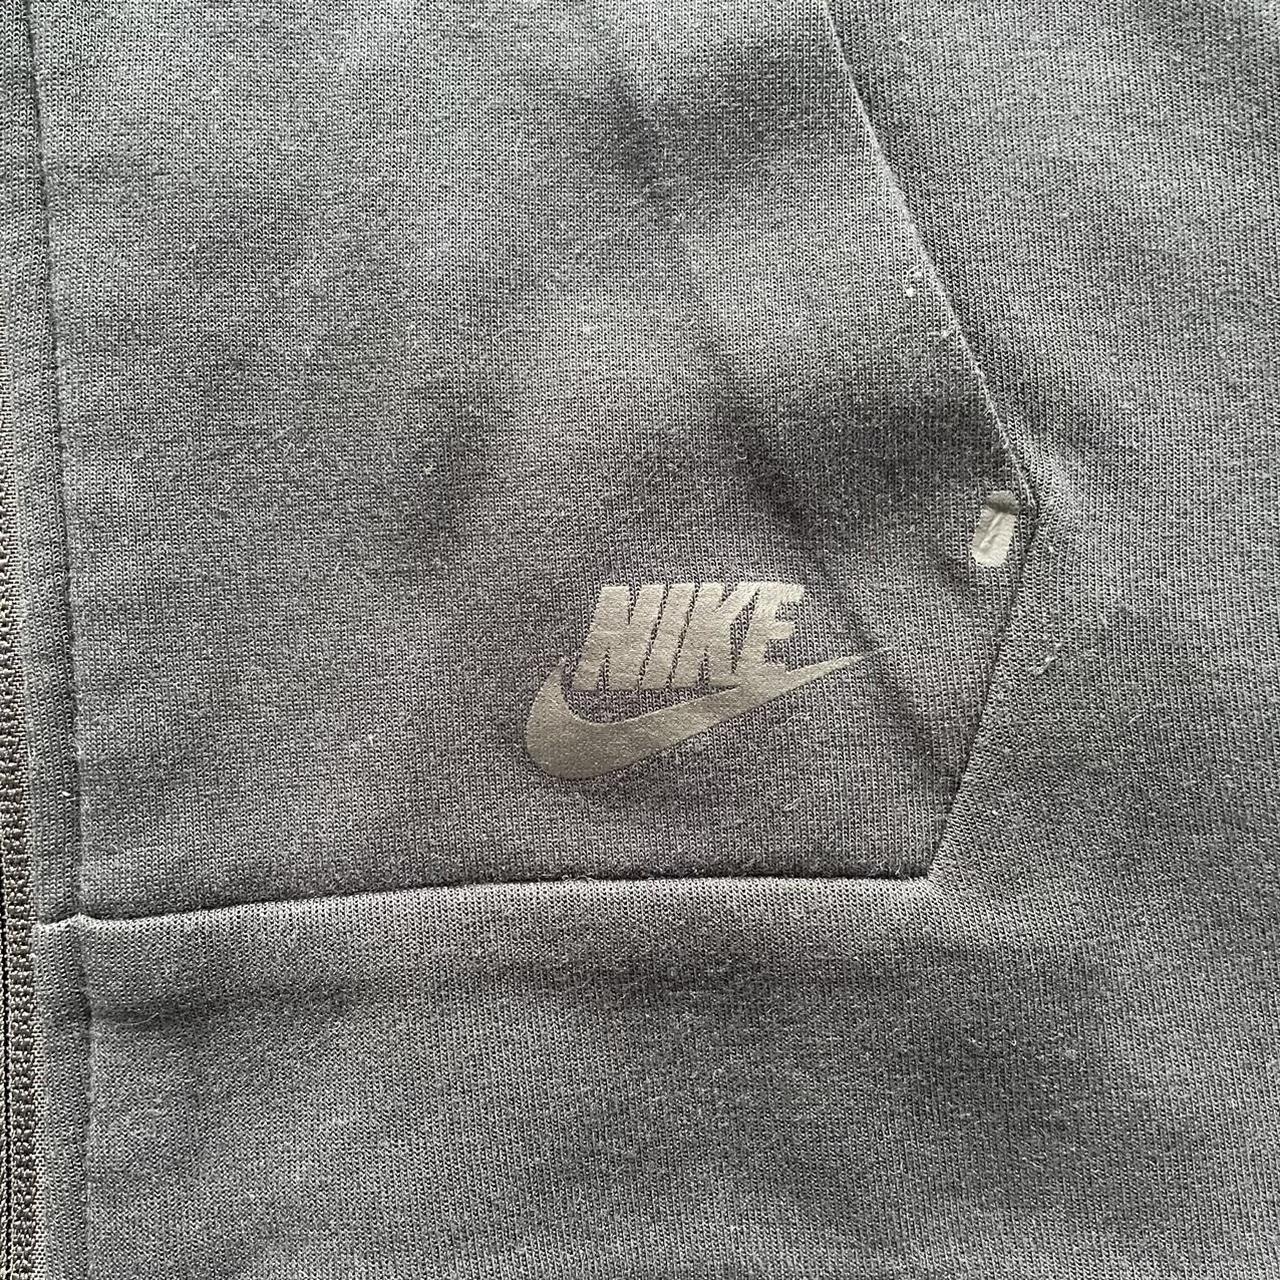 NIKE Sportswear Tech Fleece Hoodless Full Zip Jacket... - Depop